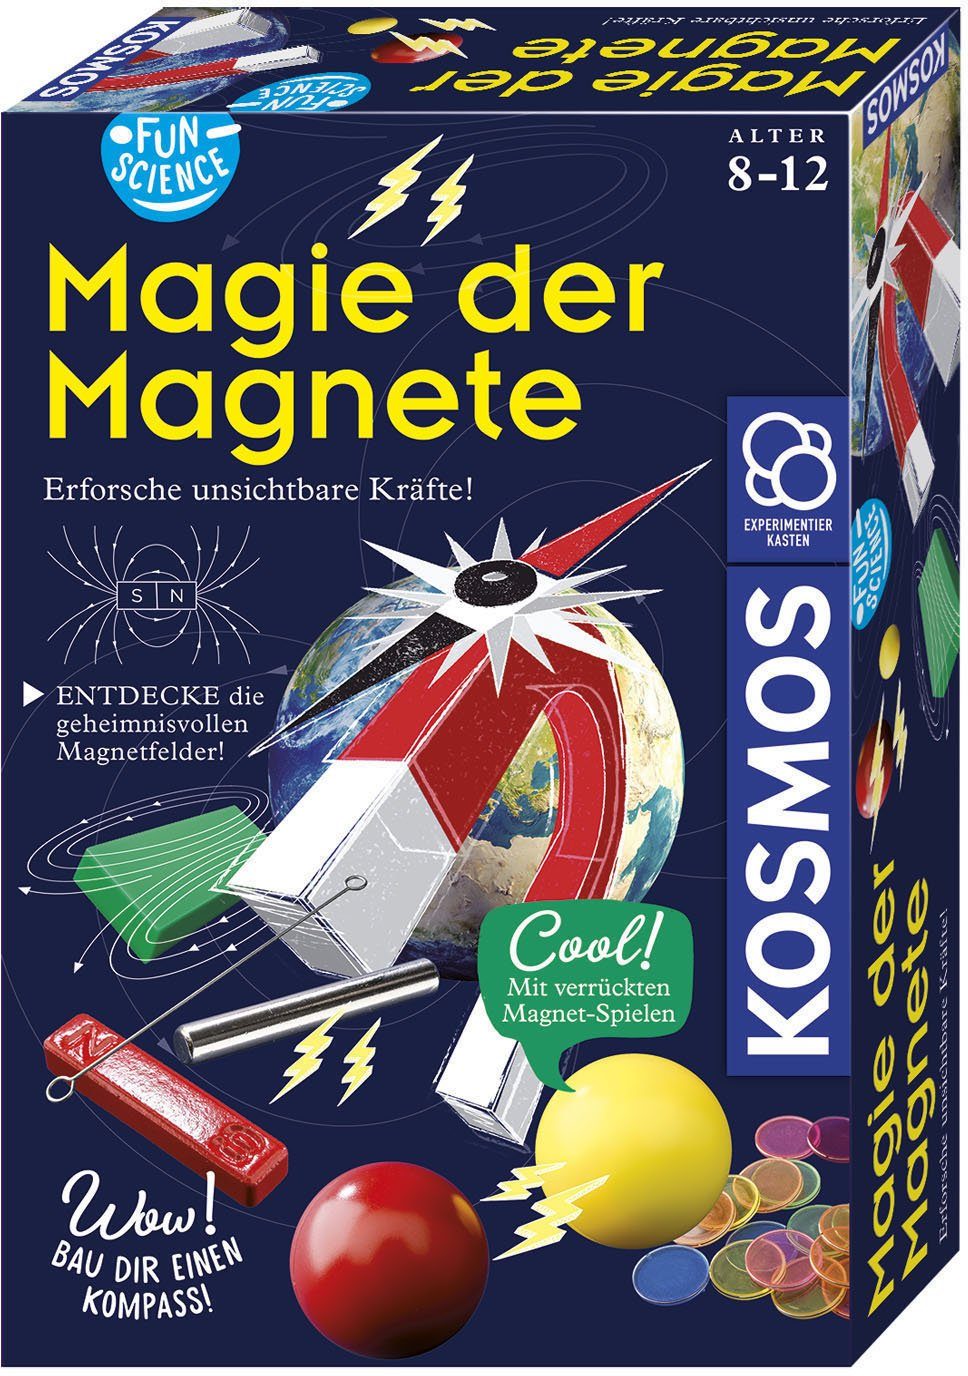 Magnete Magie Experimentierkasten Science Fun Kosmos der